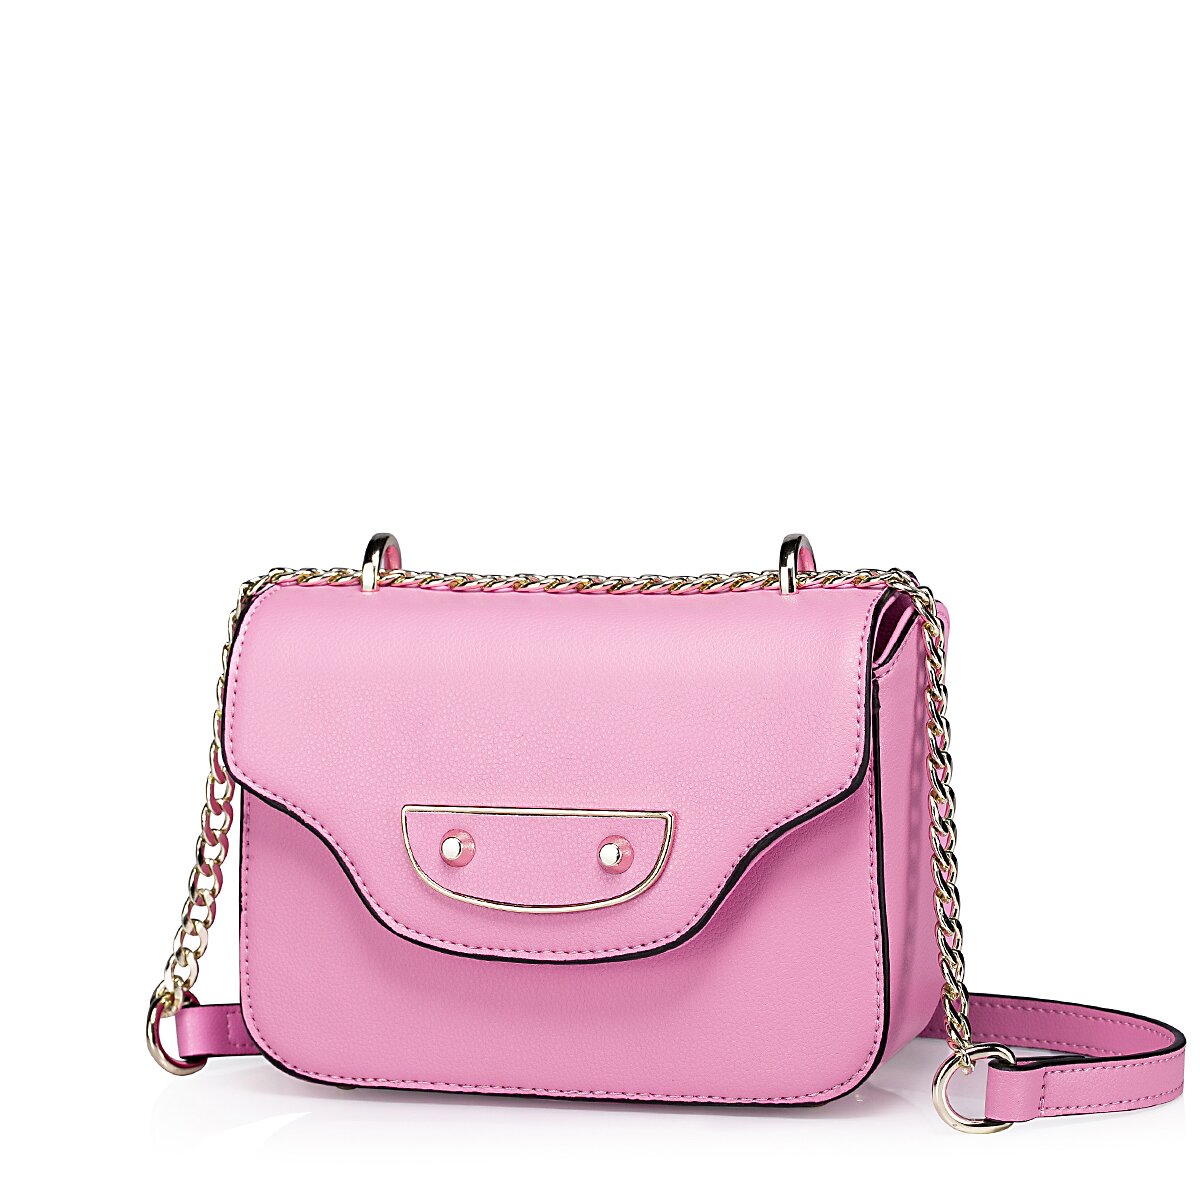 2015 NUCELLE women small shoulder bag Pink